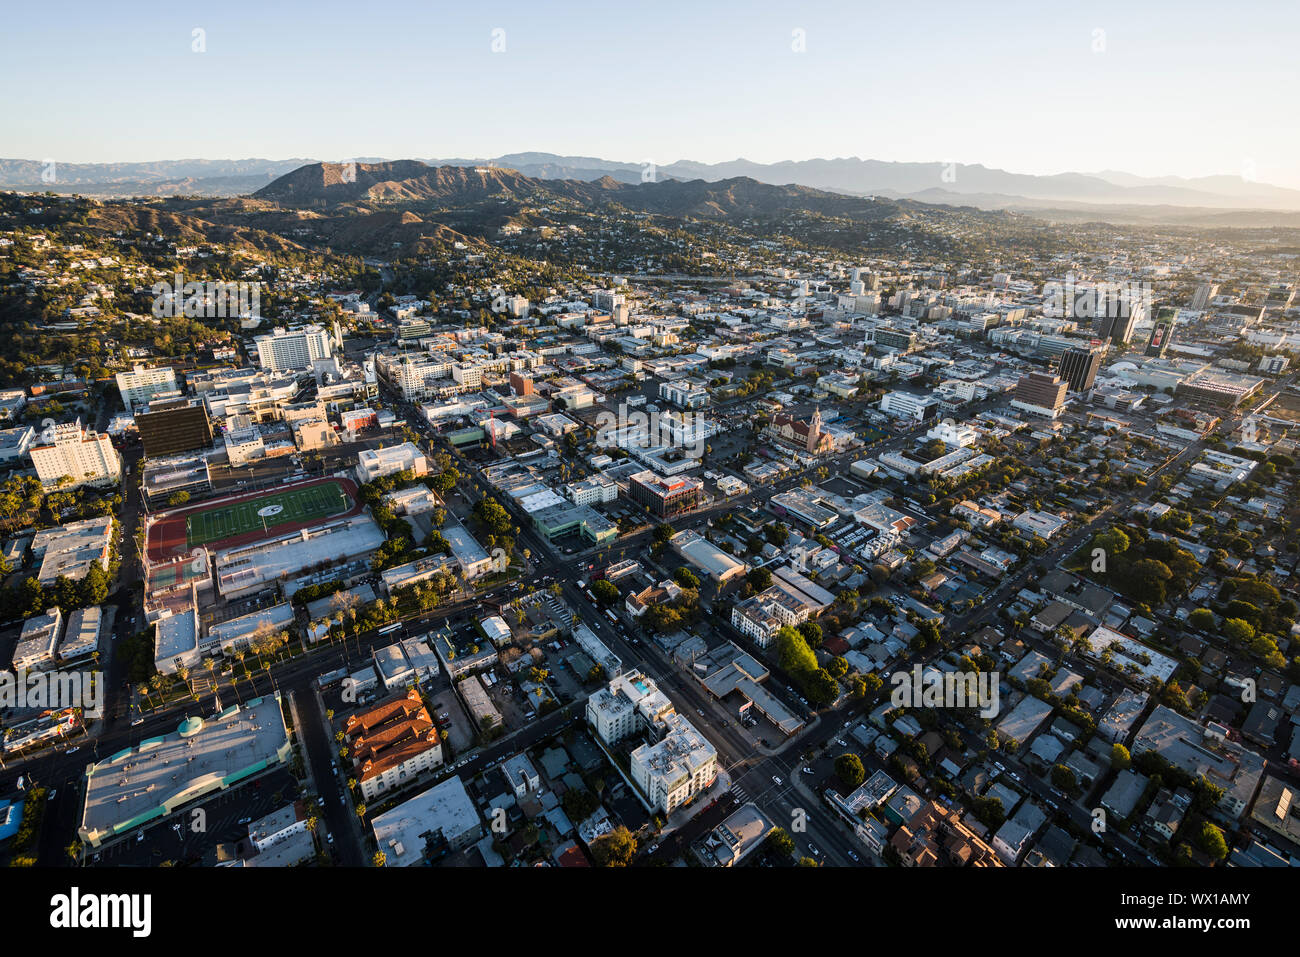 Los Angeles, Kalifornien, USA - 20. Februar 2018: Antenne morgen Blick auf Hollywood Straßen, Häuser, Schulen und Gebäude in weitläufigen Southern Cali Stockfoto